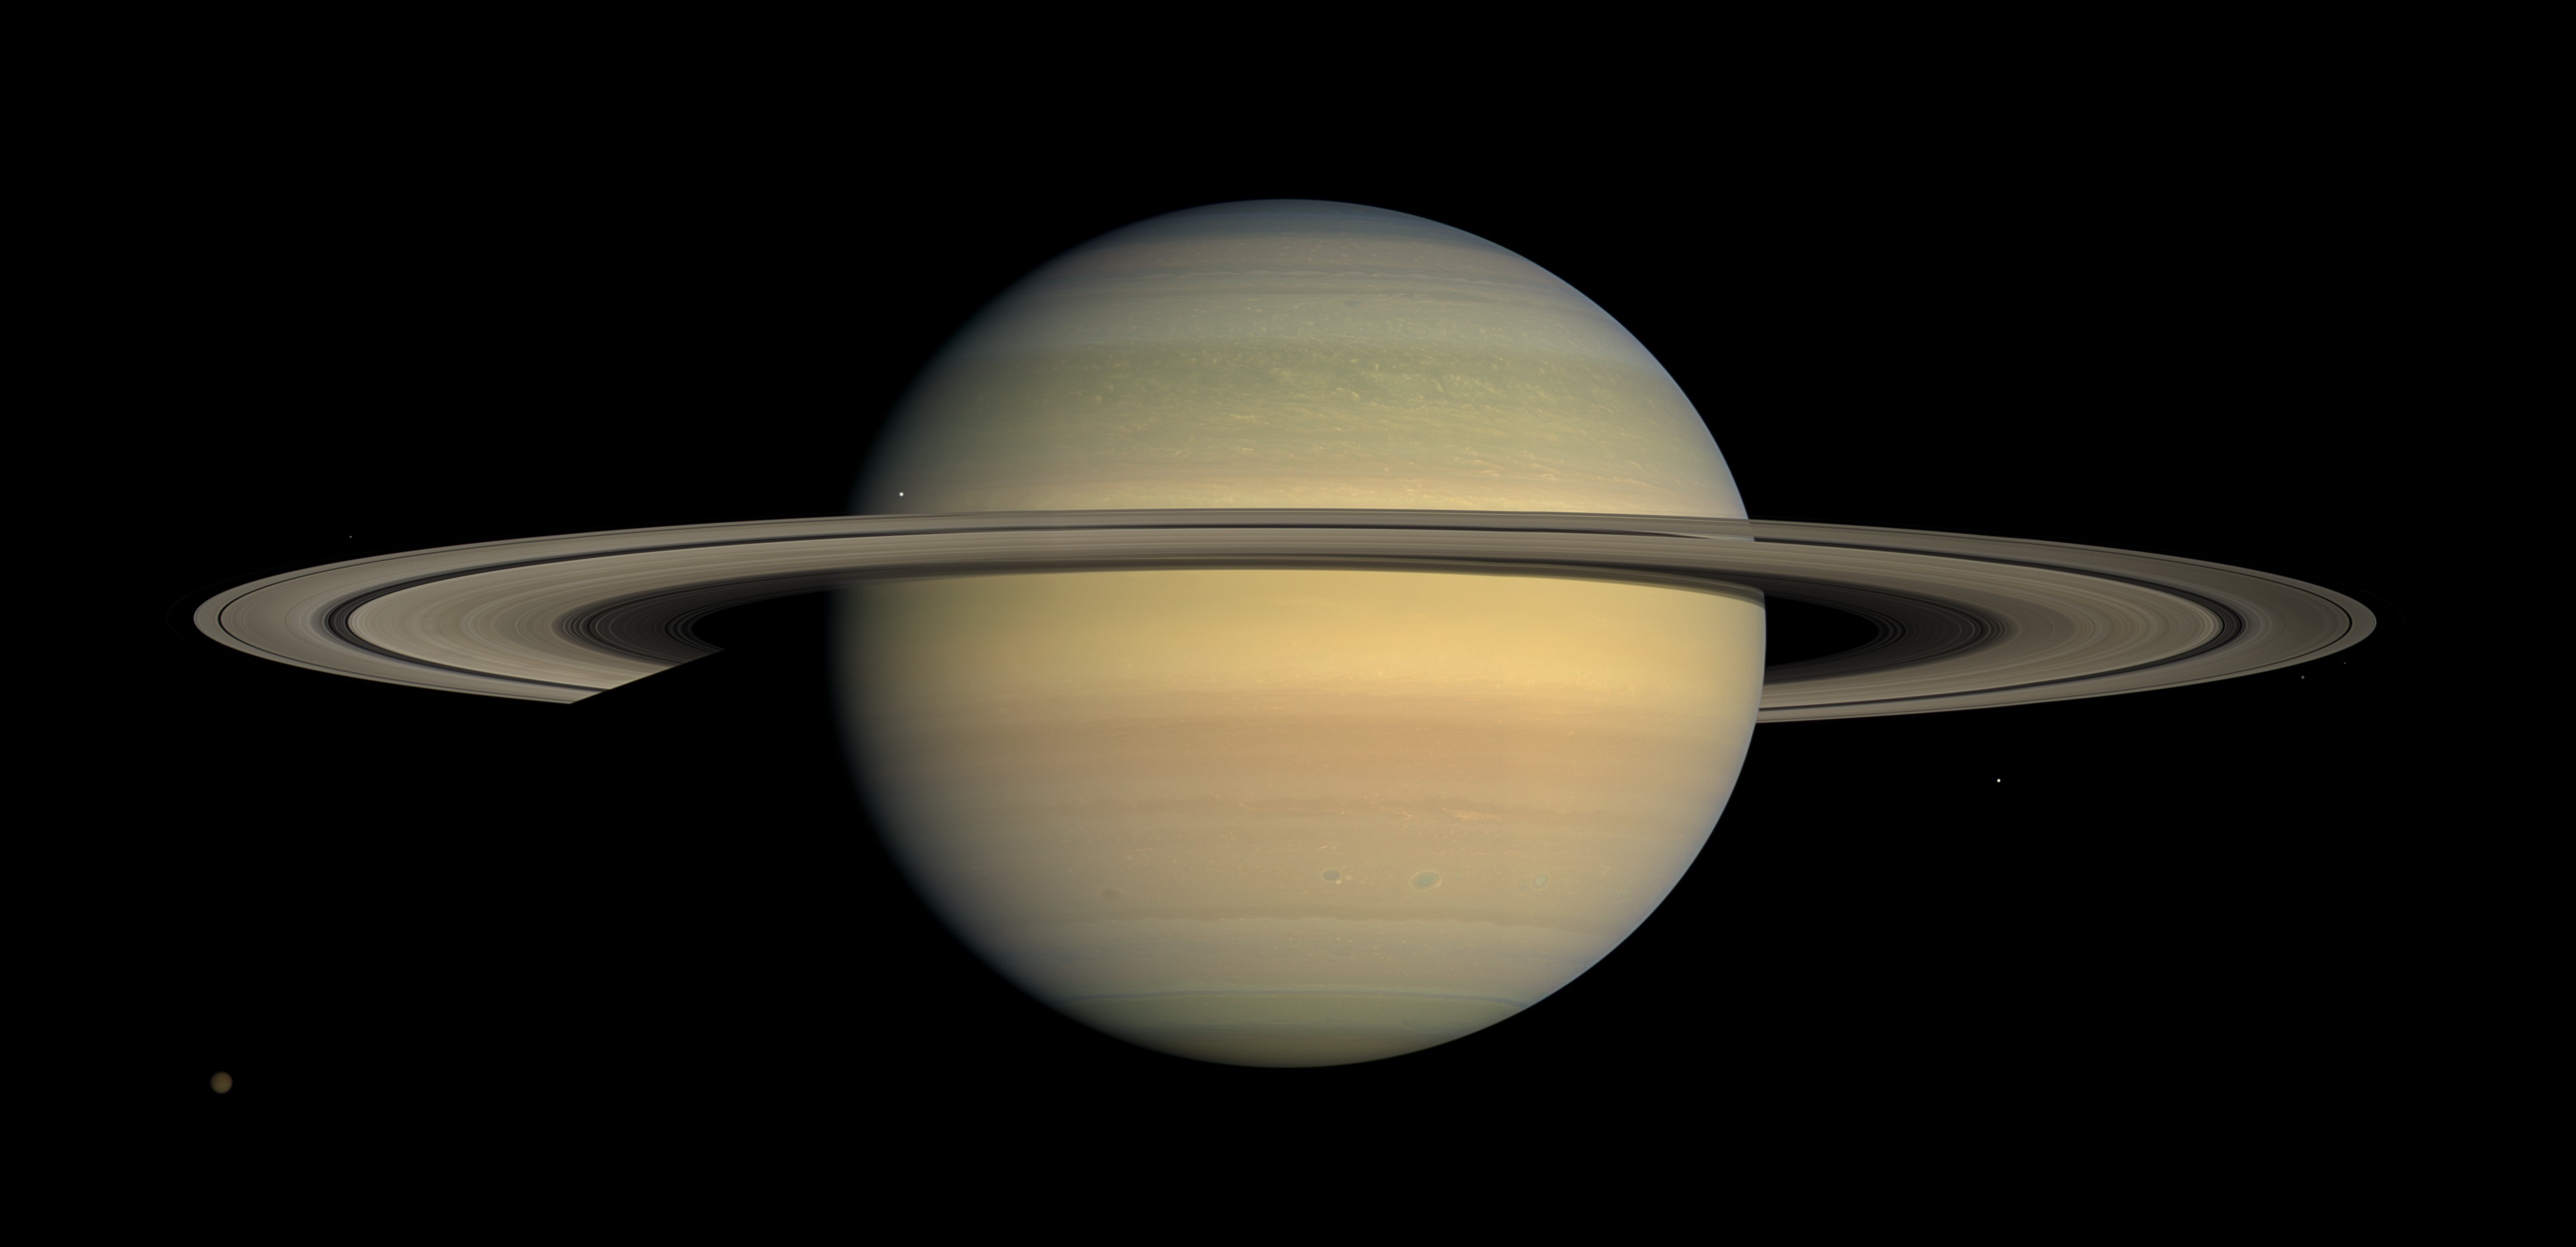 saturno (Foto: NASA / JPL / Space Science Institute)